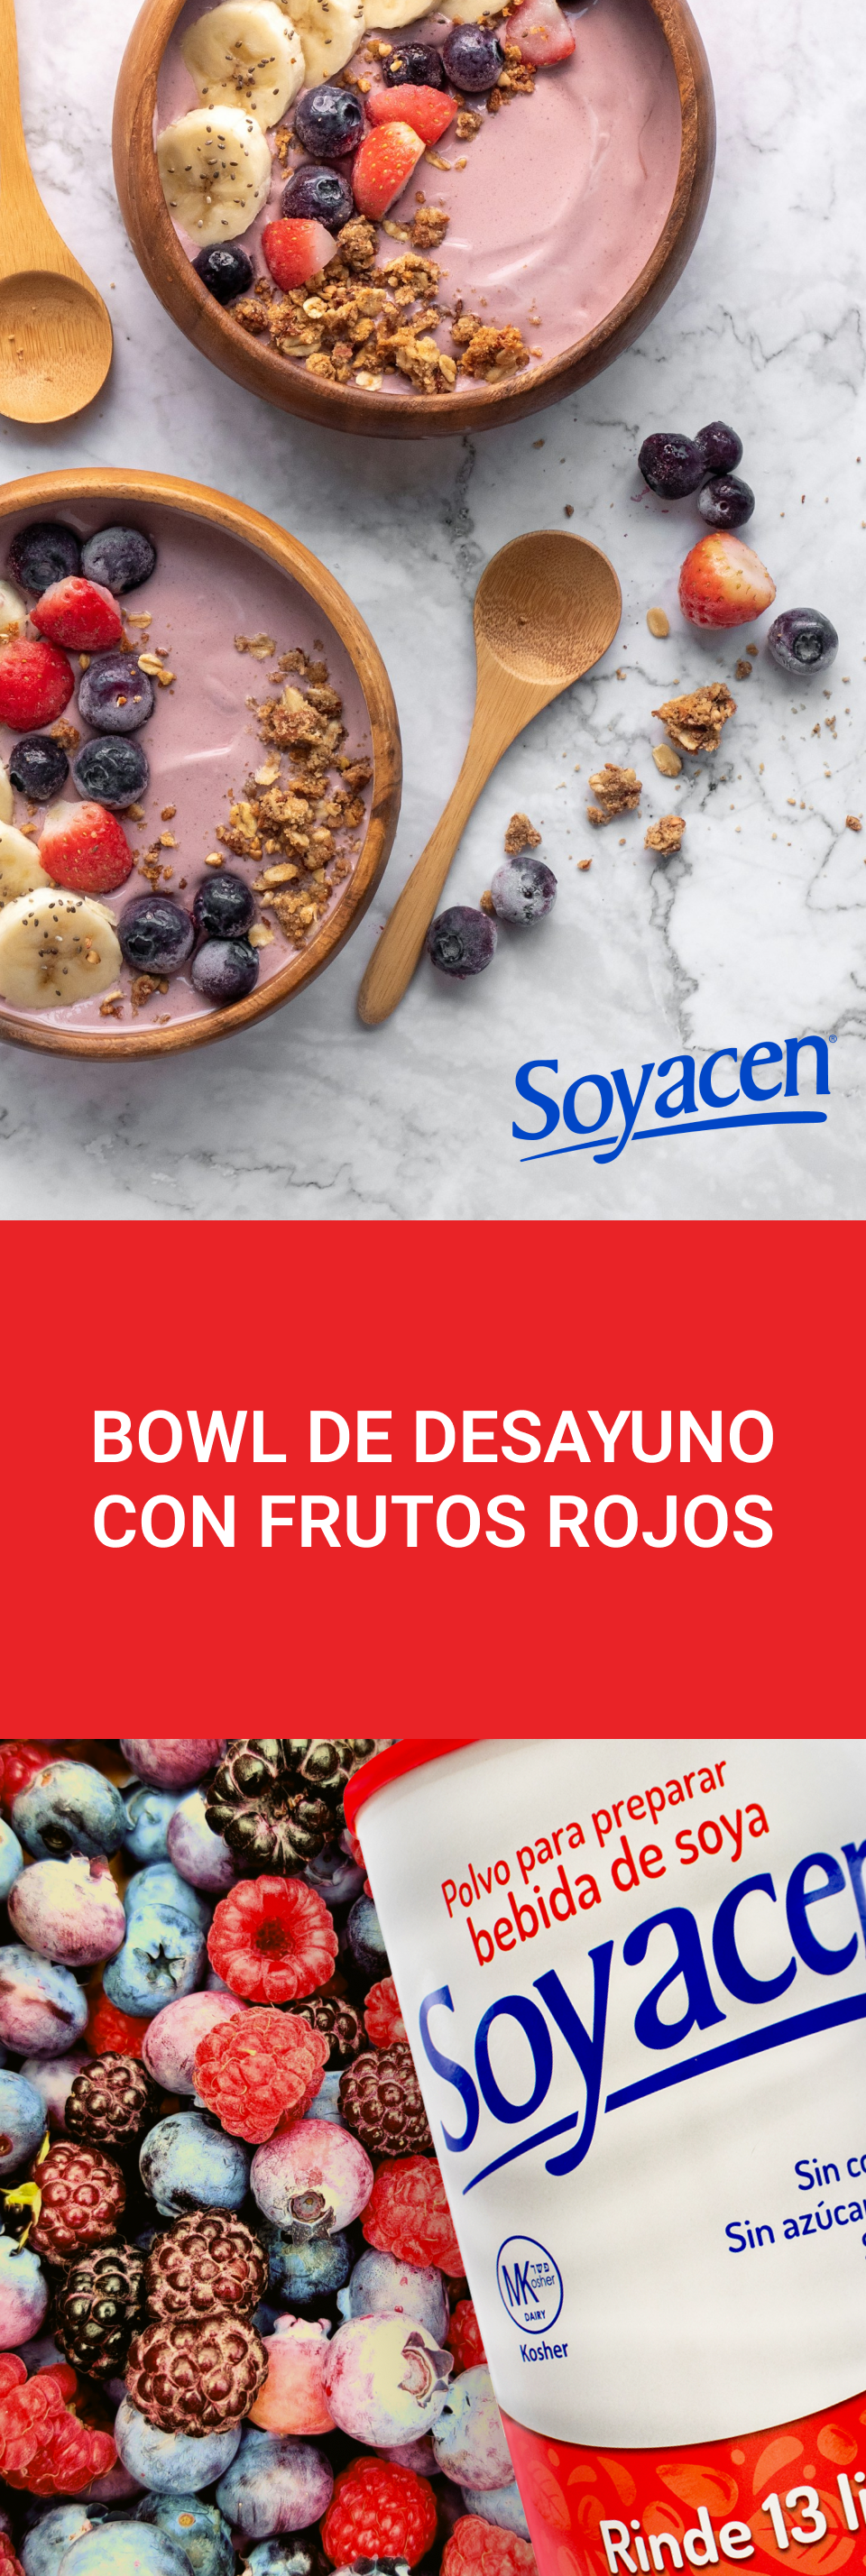 Bowl de desayuno con frutos rojos y Soyacen | Blog PRONACEN